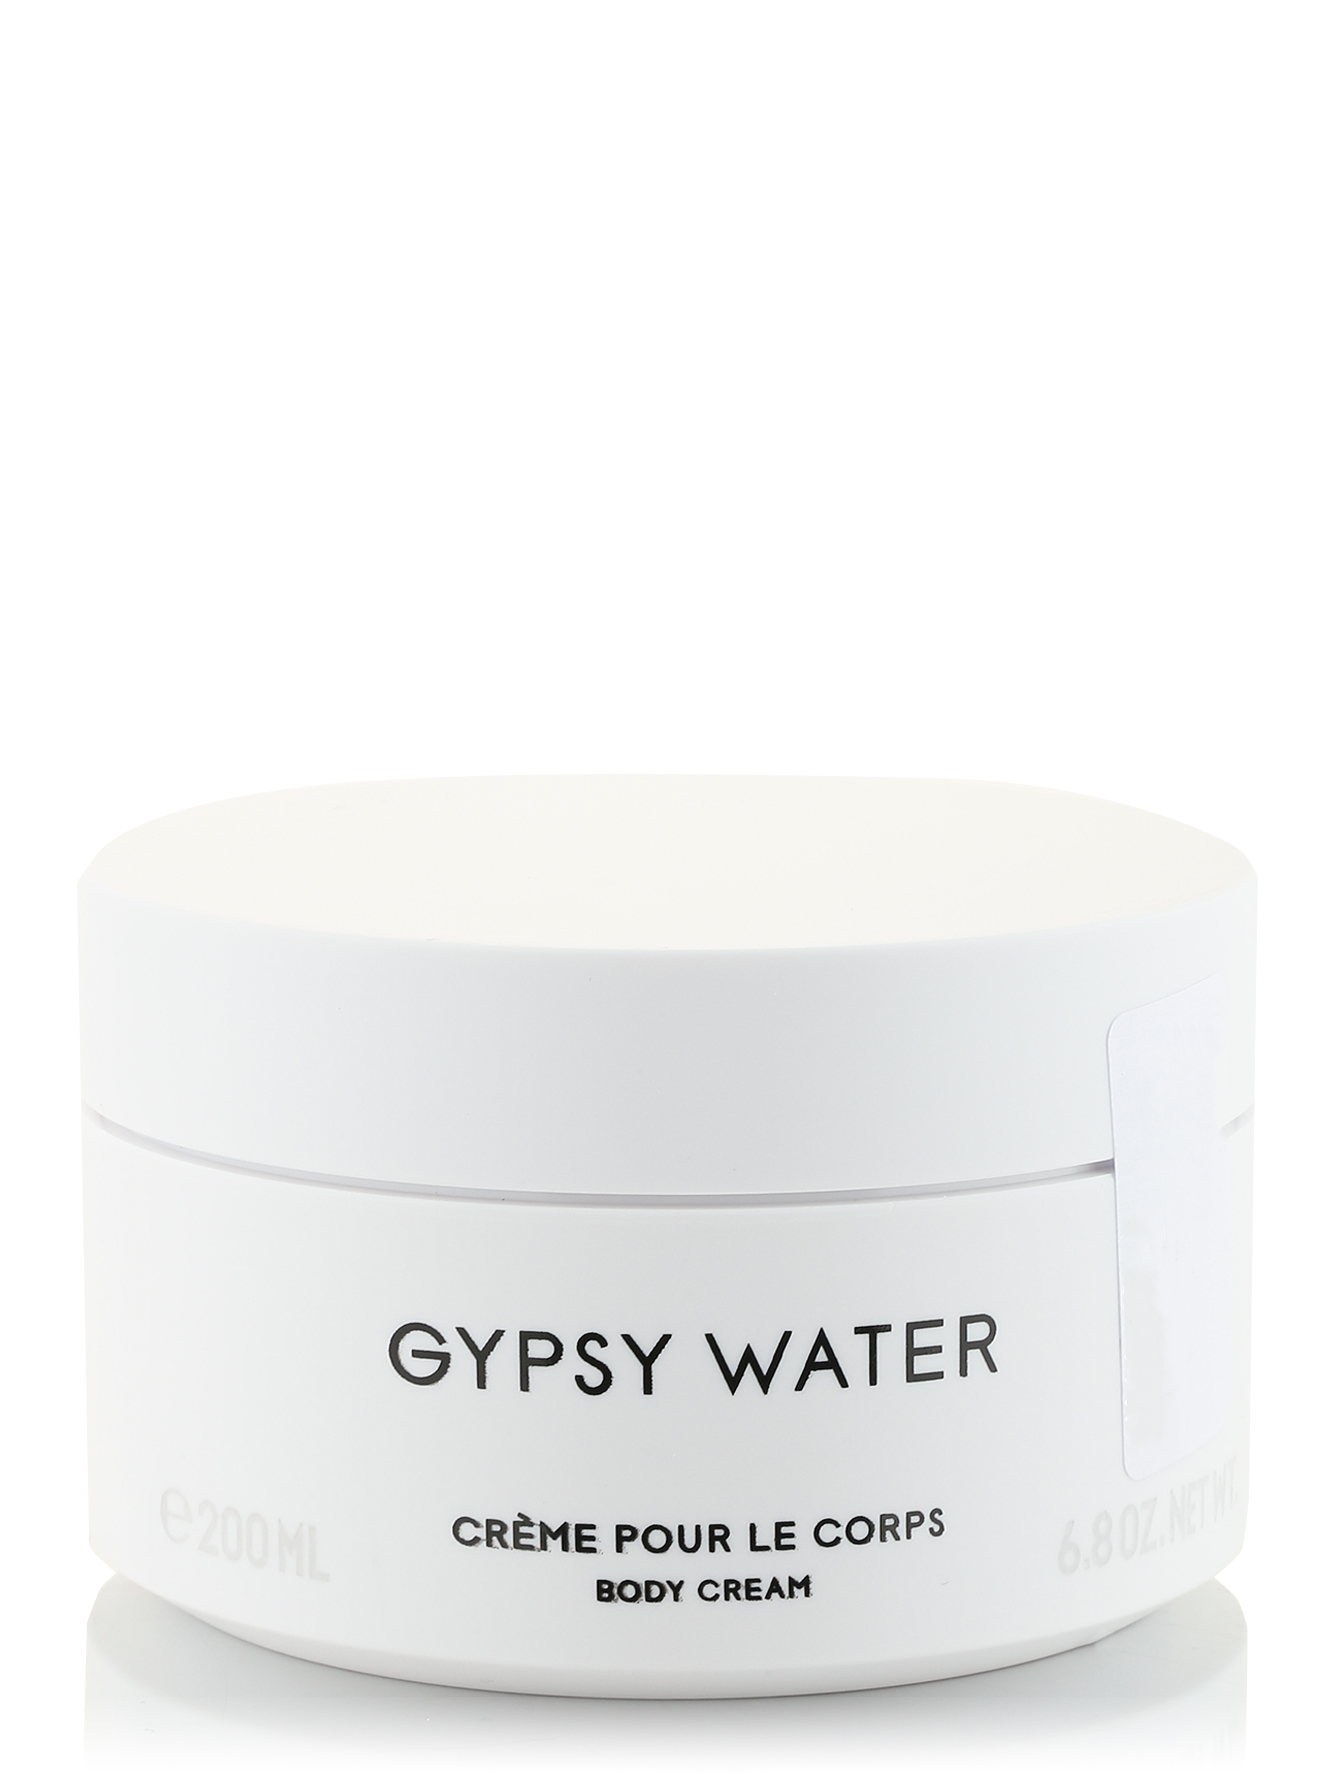  Крем для тела - Gypsy Water, 200ml - Общий вид